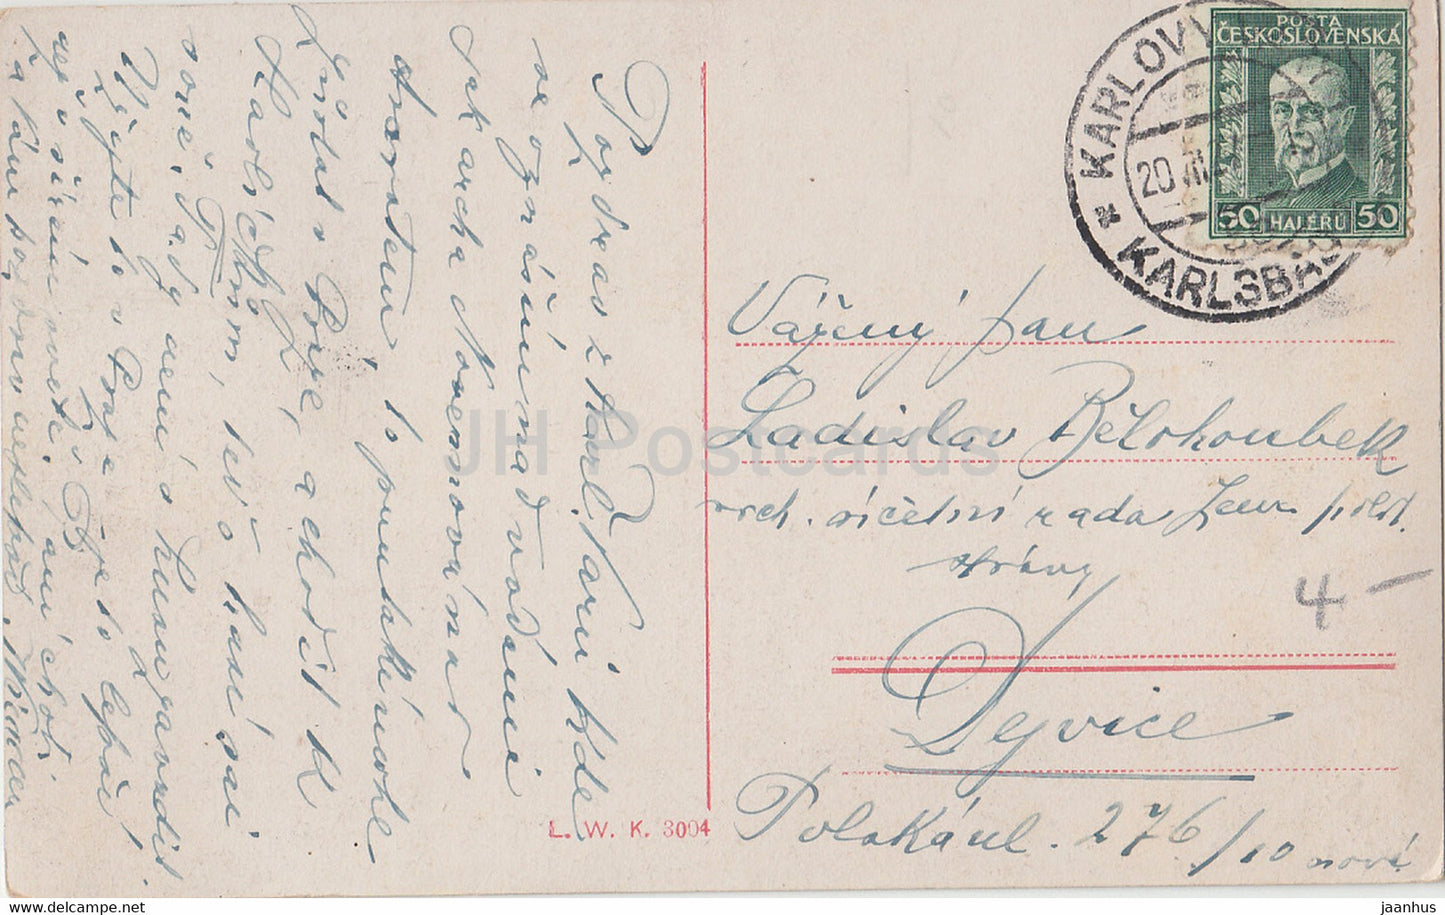 Karlovy Vary - Karlsbad - Aeussere - Sprudelkolonnade - carte postale ancienne - Tchécoslovaquie - République tchèque - utilisé